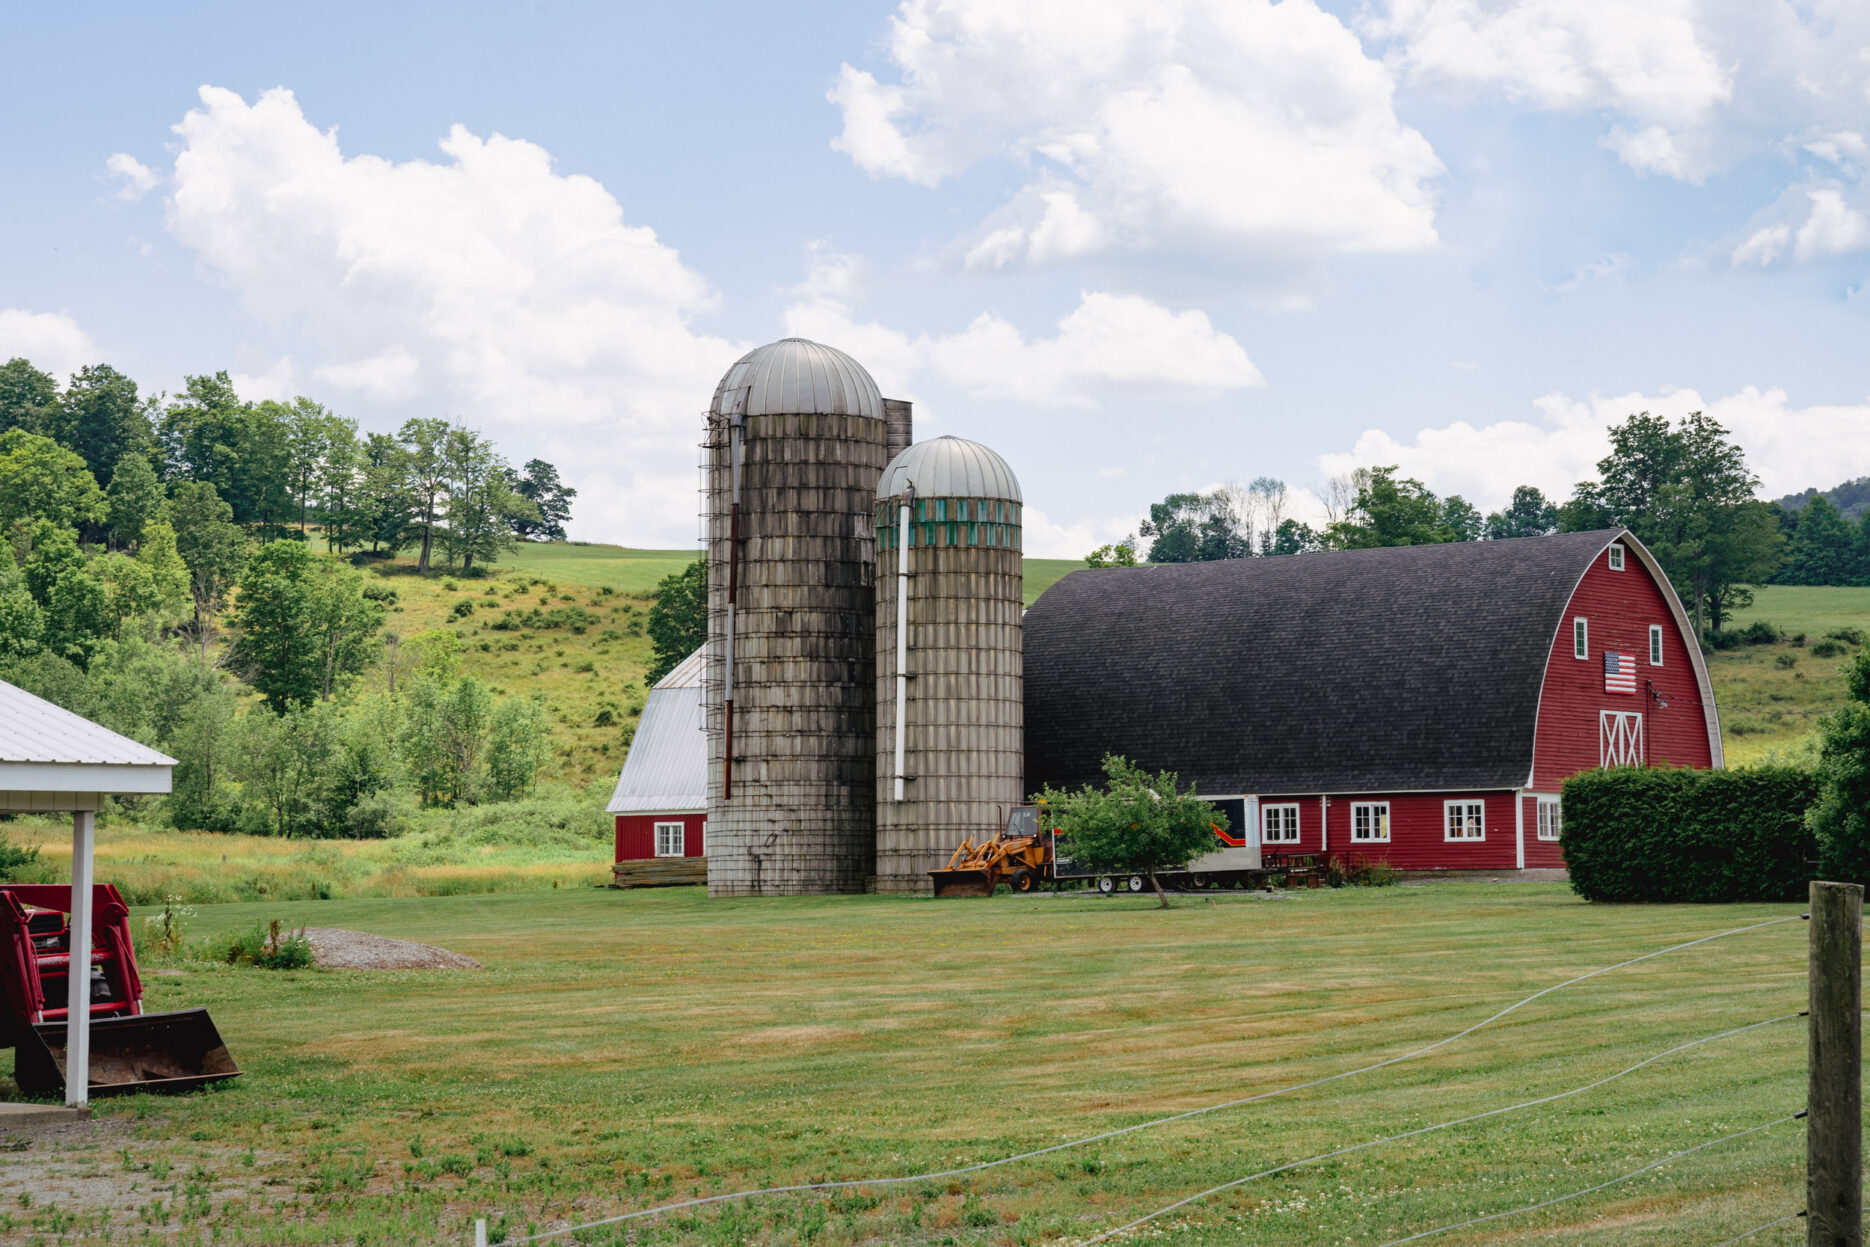 Farm silos photo by Chuck Pearson